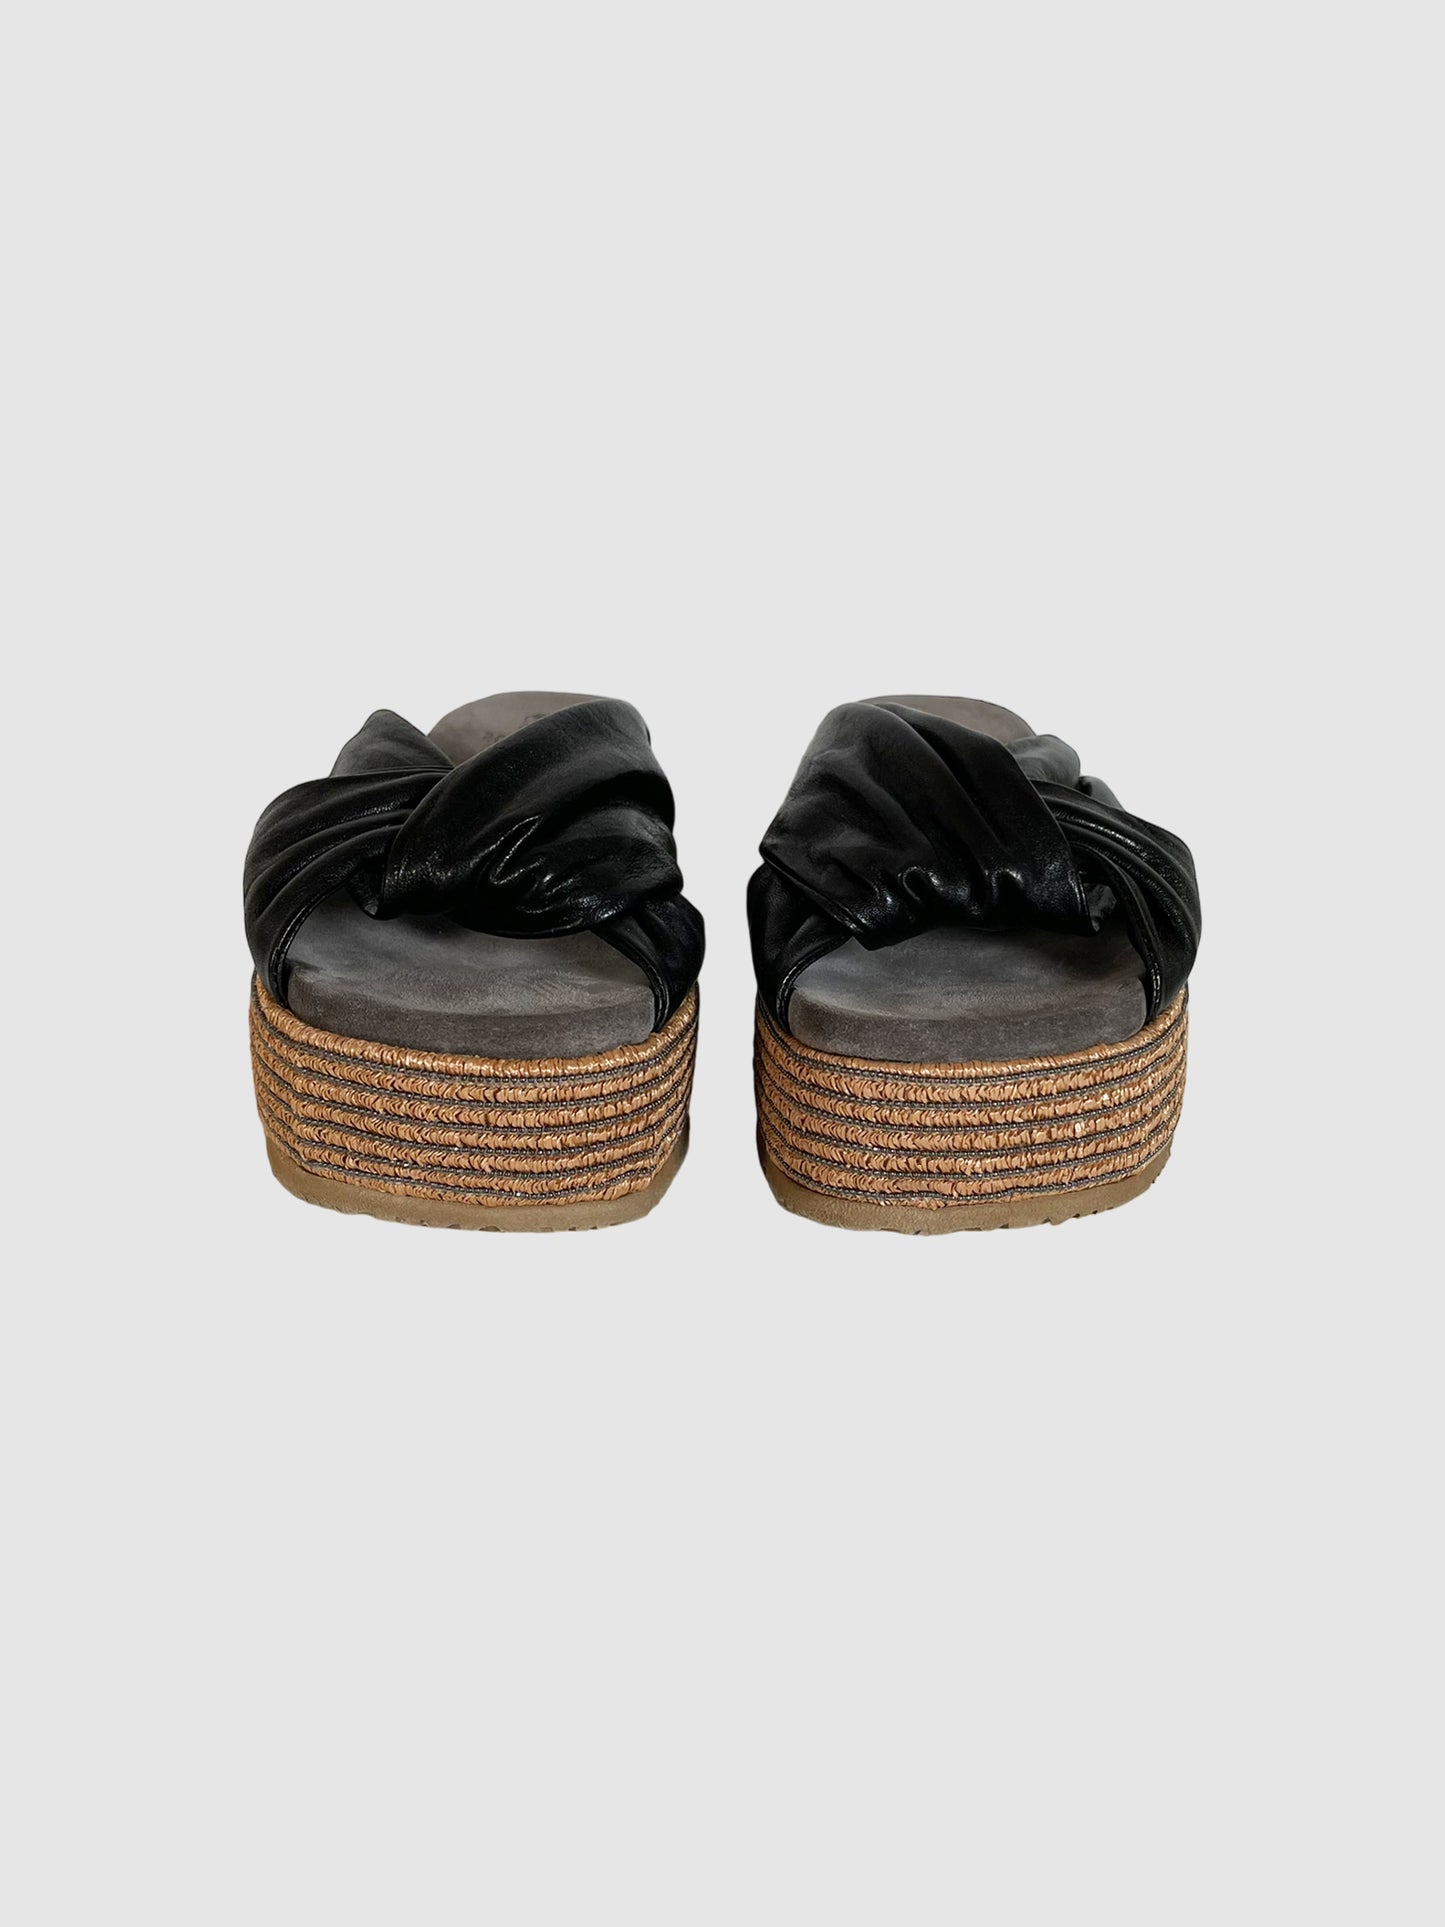 Brunello Cucinelli Flatform Sandals - Size 41